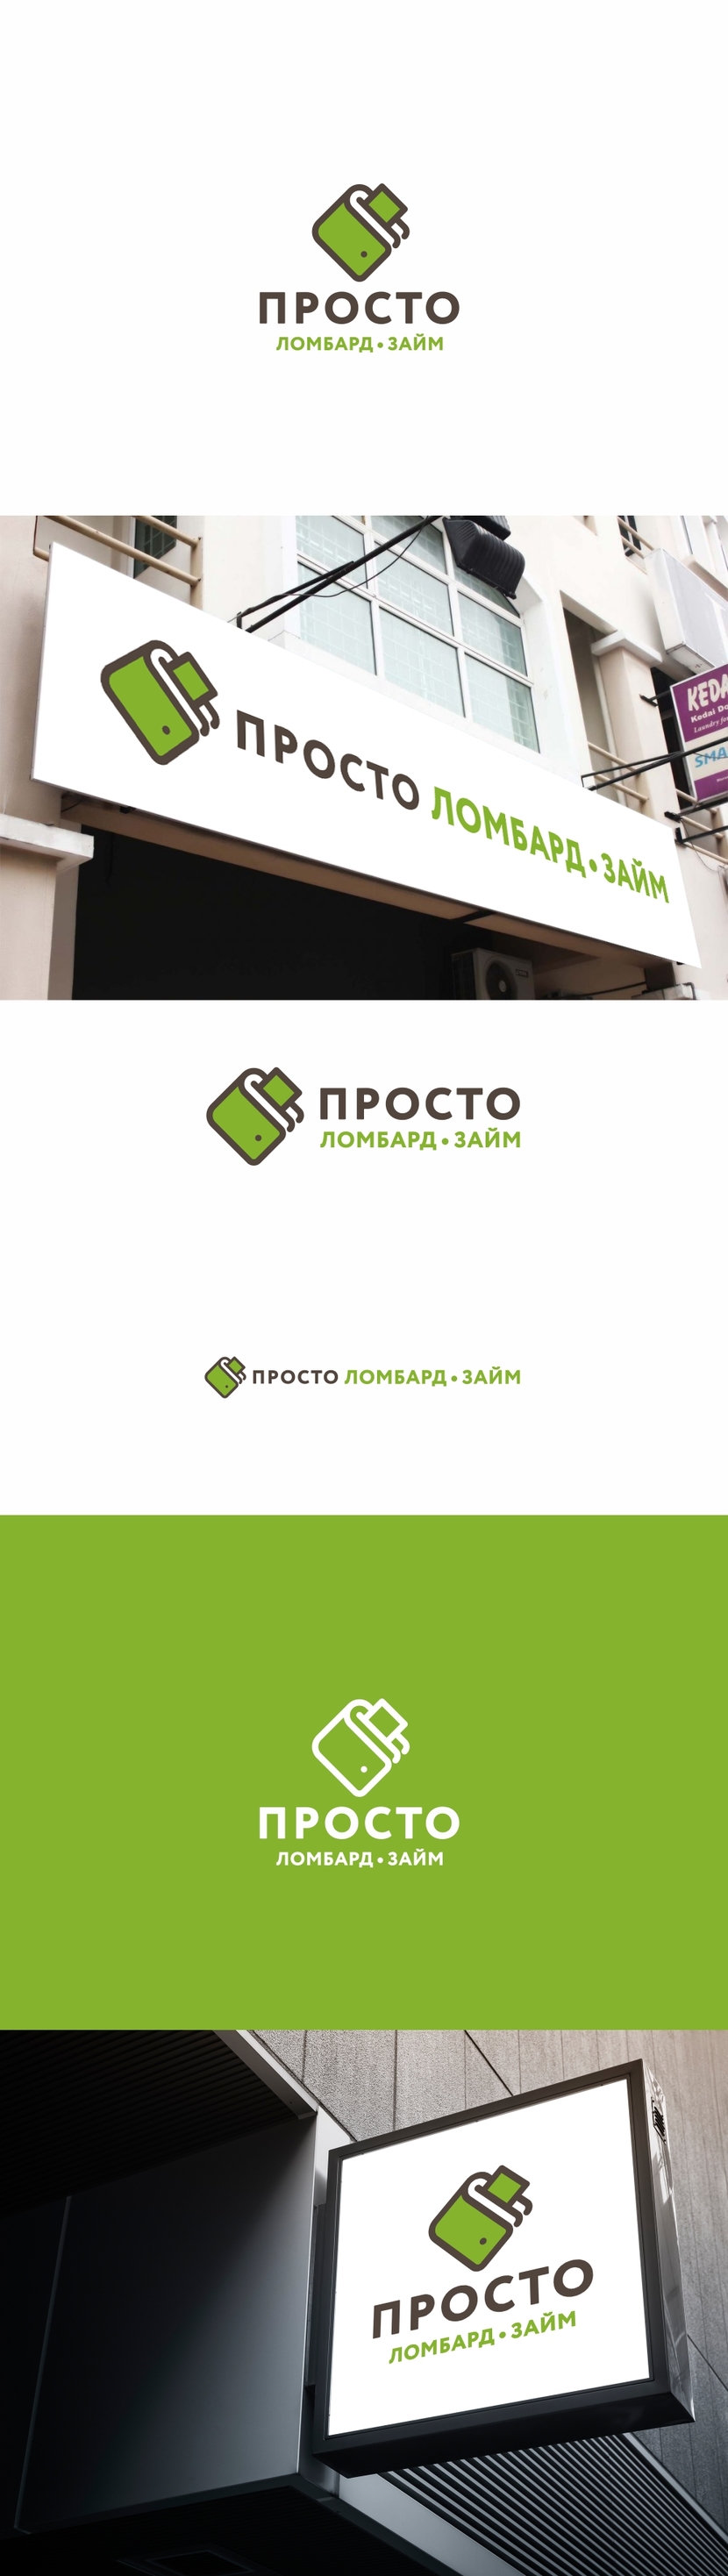 Логотип для ломбардов/займов  -  автор Андрей Мартынович